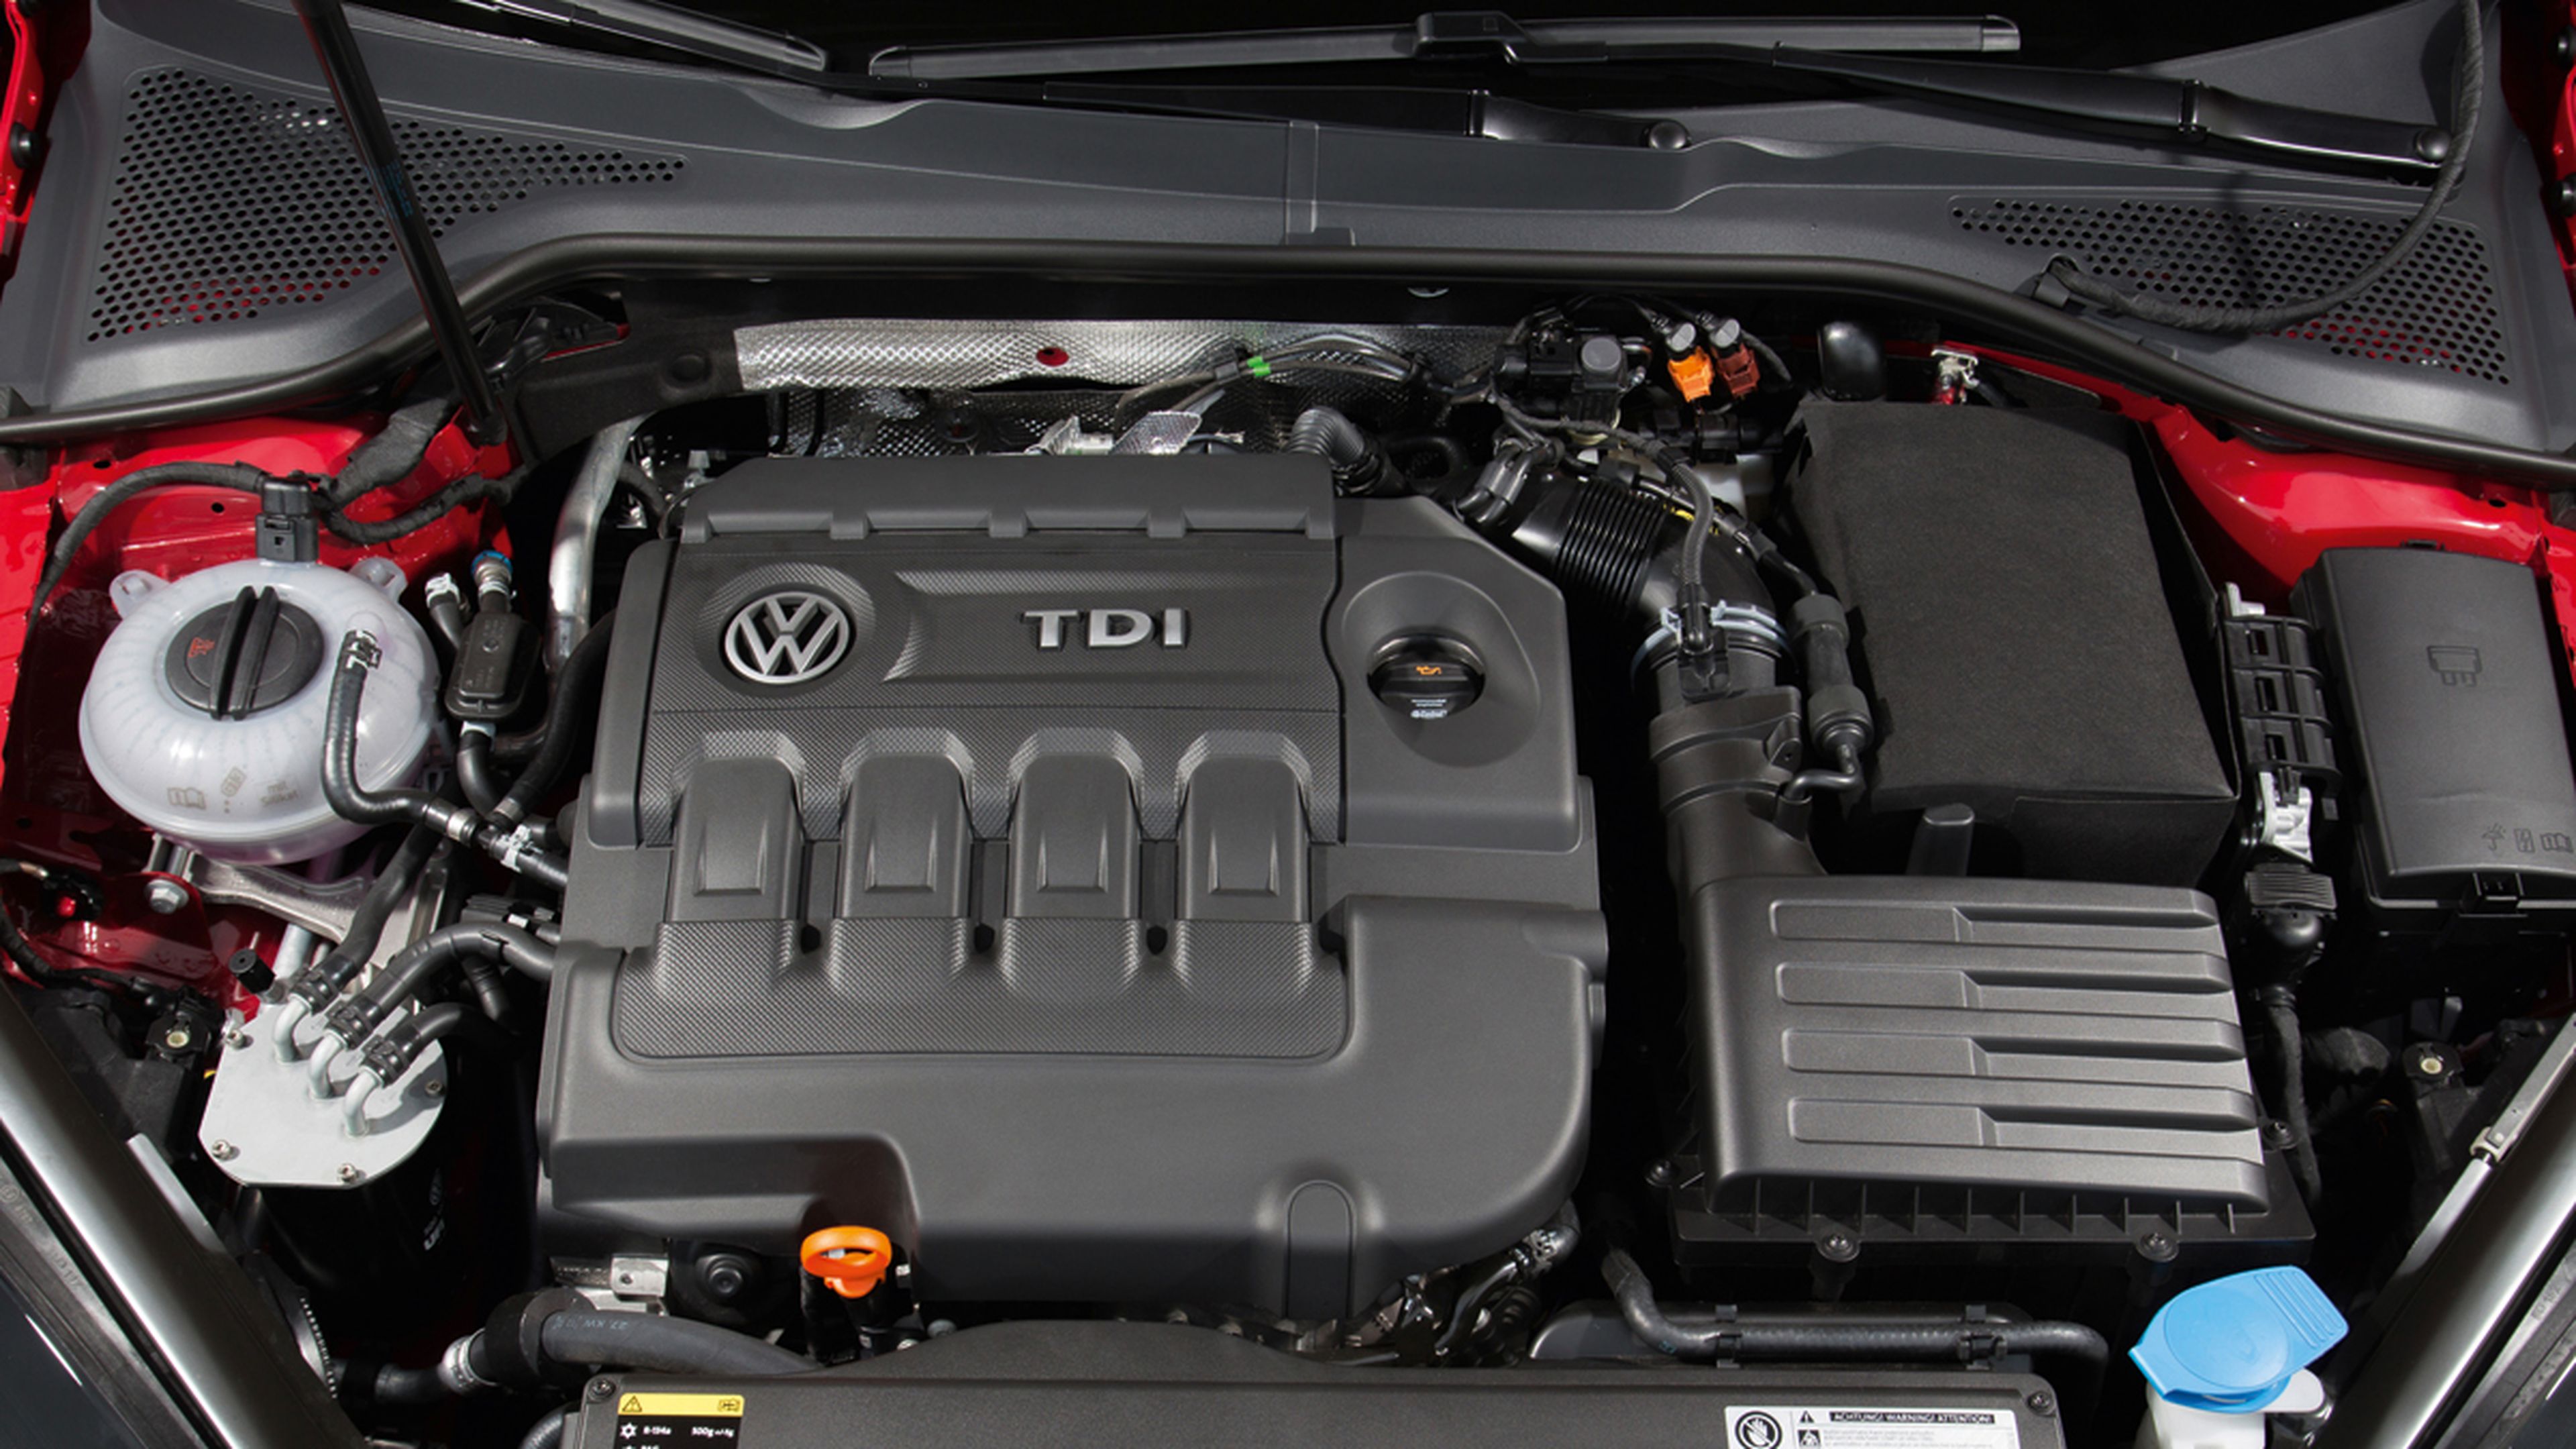 Volkswagen llama a revisión a 190.000 vehículos en India